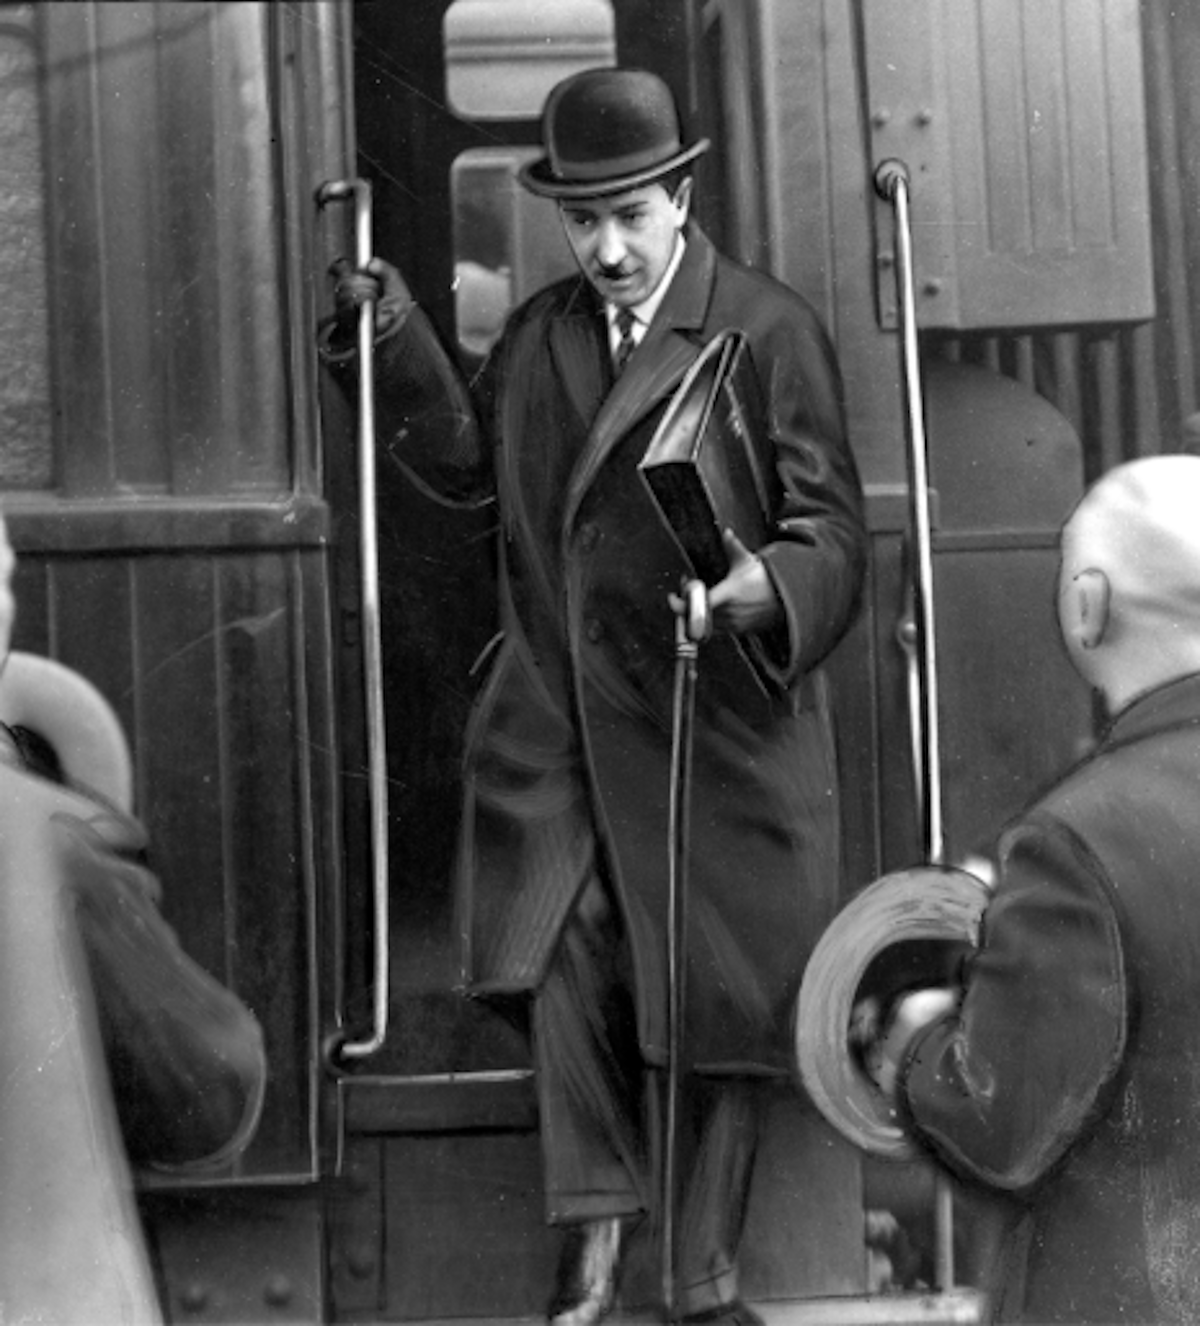 Ilustracja przedstawia mężczyznę  wysiadającego z pociągu. Mężczyzn ubrany jest w cylinder, płaszcz oraz garnitur wystający spod płaszcza. Na dłoniach ma skórzane rękawiczki. W prawej ręce trzyma aktówkę oraz laskę.  Przed nim widać kontury dwóch innych osób zwróconych do niego twarzą.